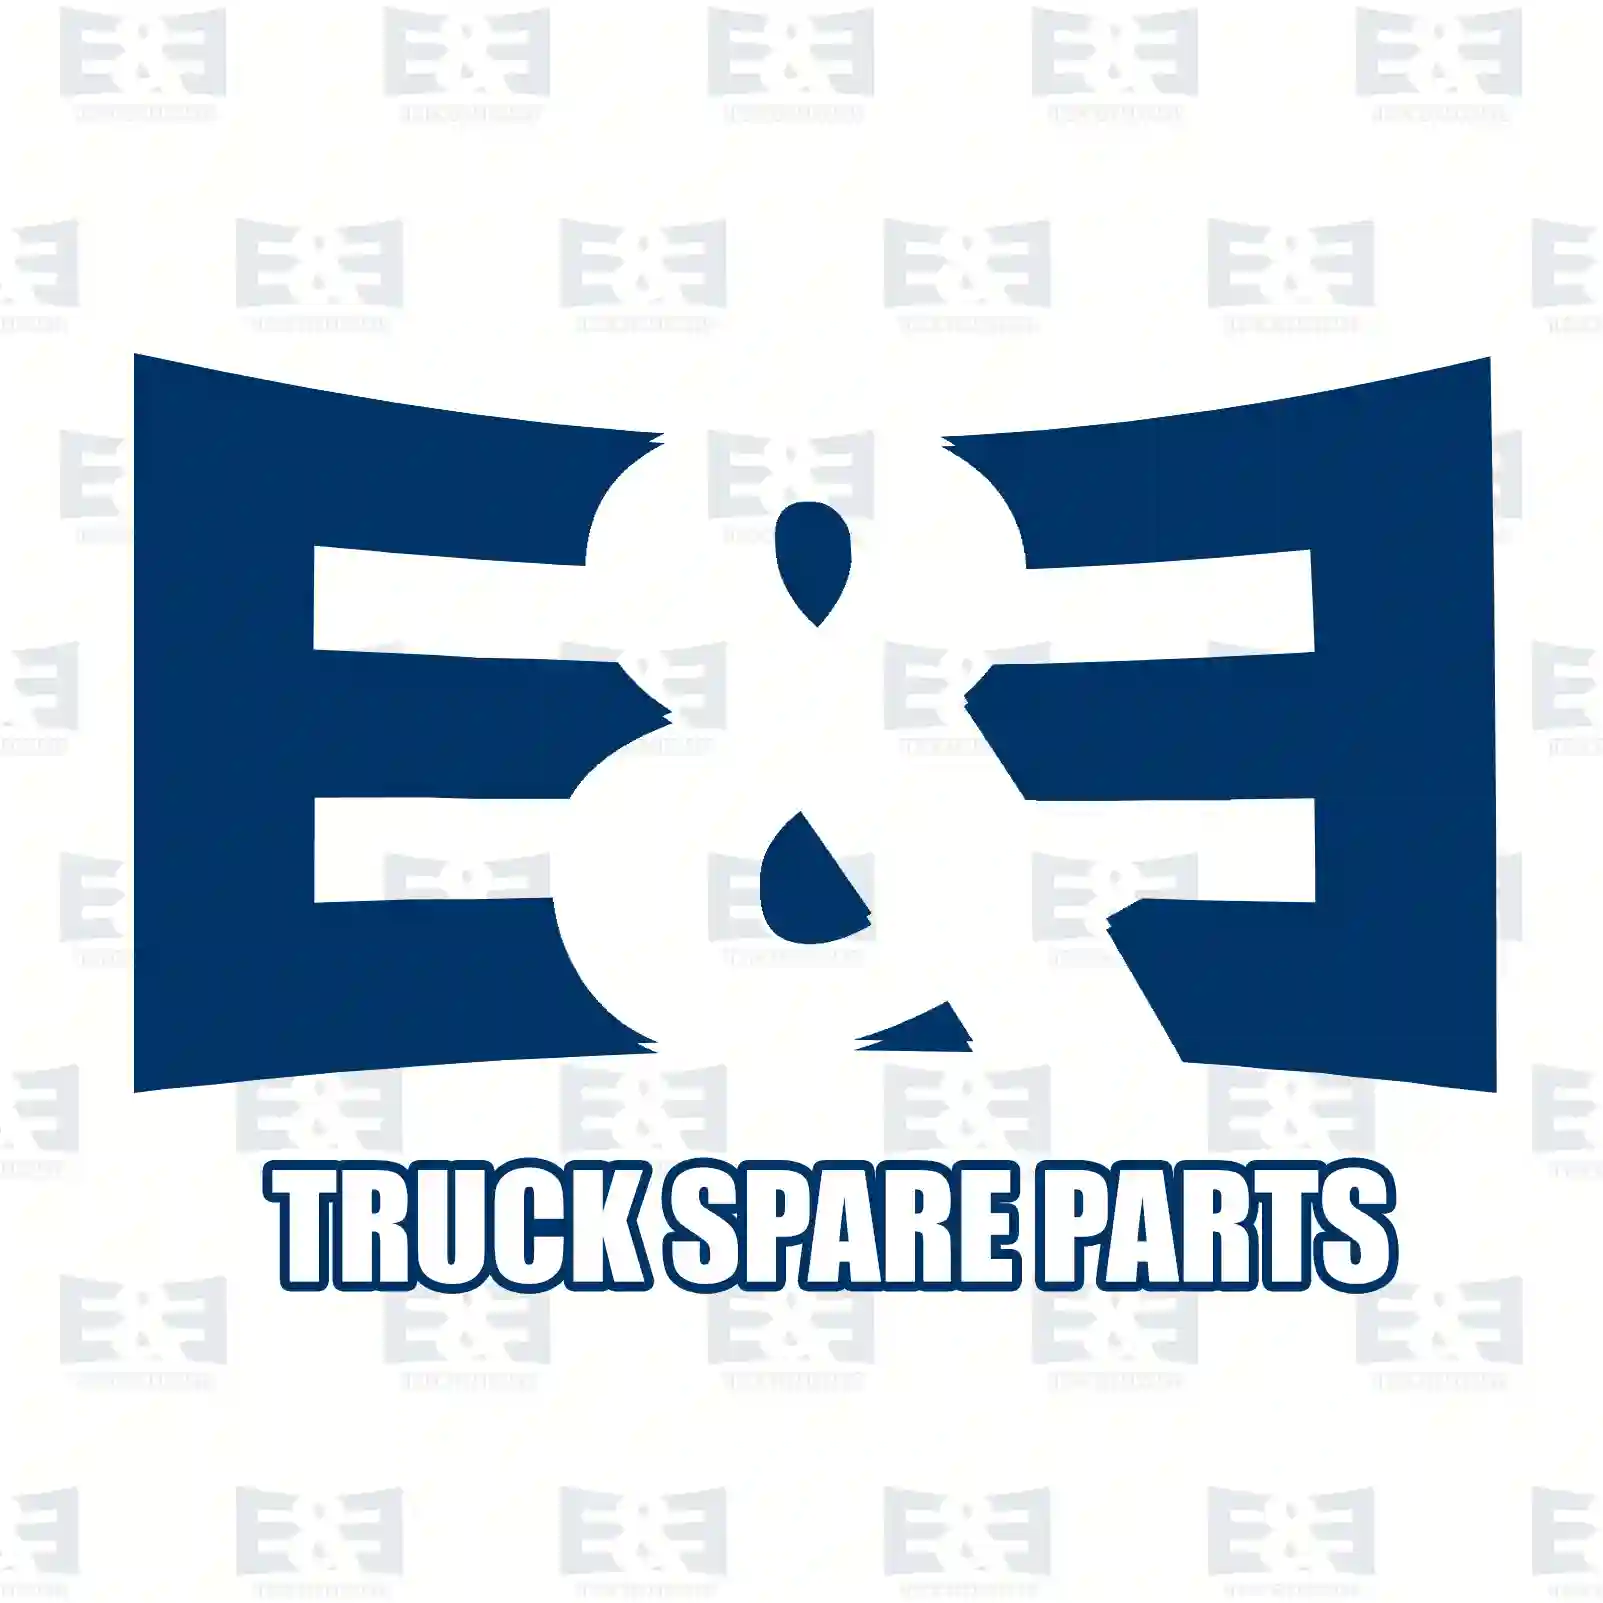 Synchronizer unit, 2E2279475, 328117 ||  2E2279475 E&E Truck Spare Parts | Truck Spare Parts, Auotomotive Spare Parts Synchronizer unit, 2E2279475, 328117 ||  2E2279475 E&E Truck Spare Parts | Truck Spare Parts, Auotomotive Spare Parts